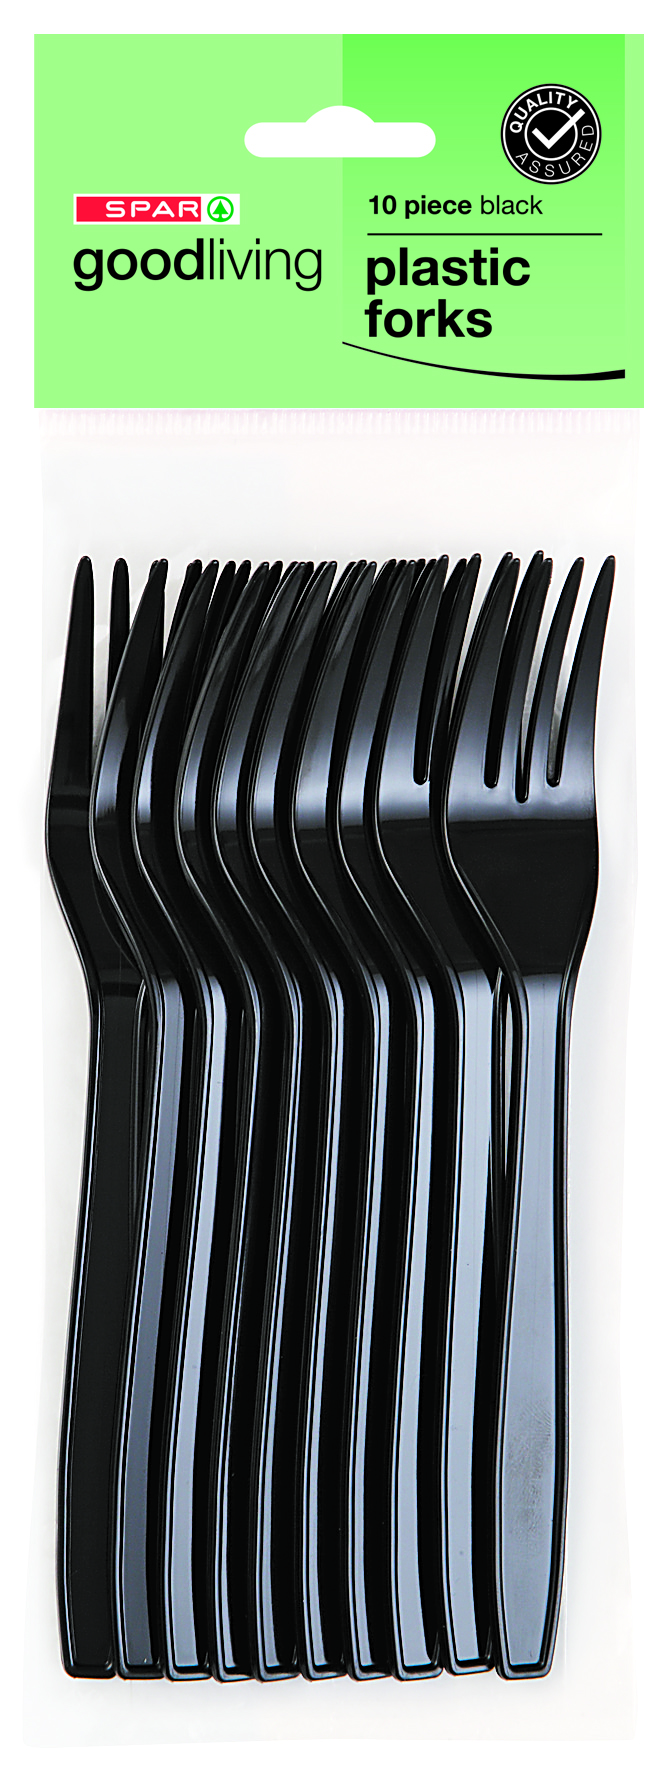 plastic forks - black (10 piece)